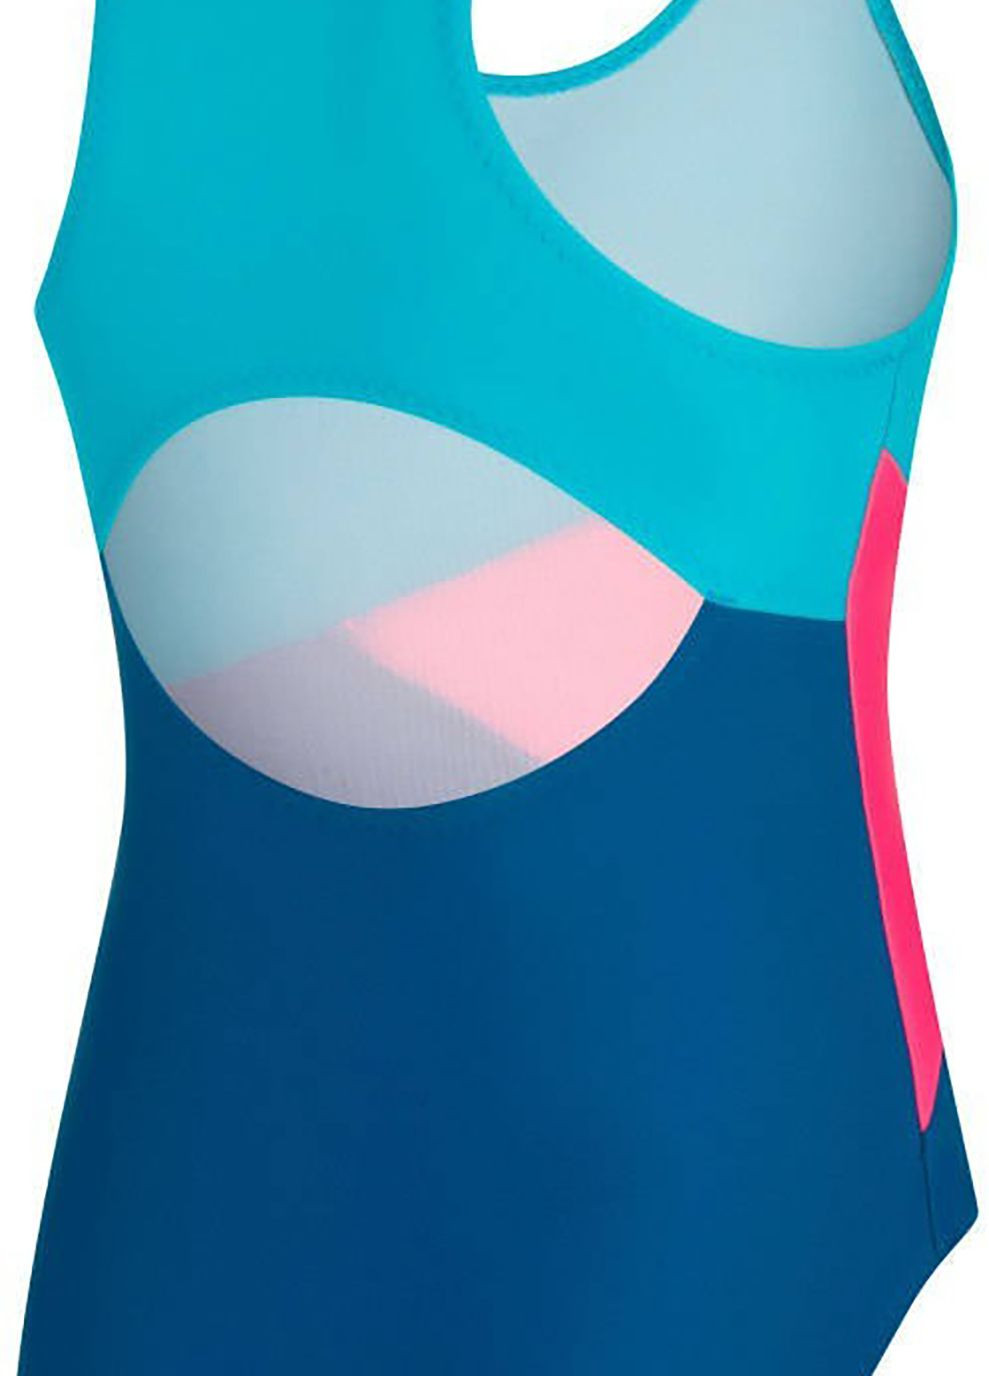 Комбинированный демисезонный купальник для девочек pola 9847 темно-синий, голубой, розовый дет Aqua Speed